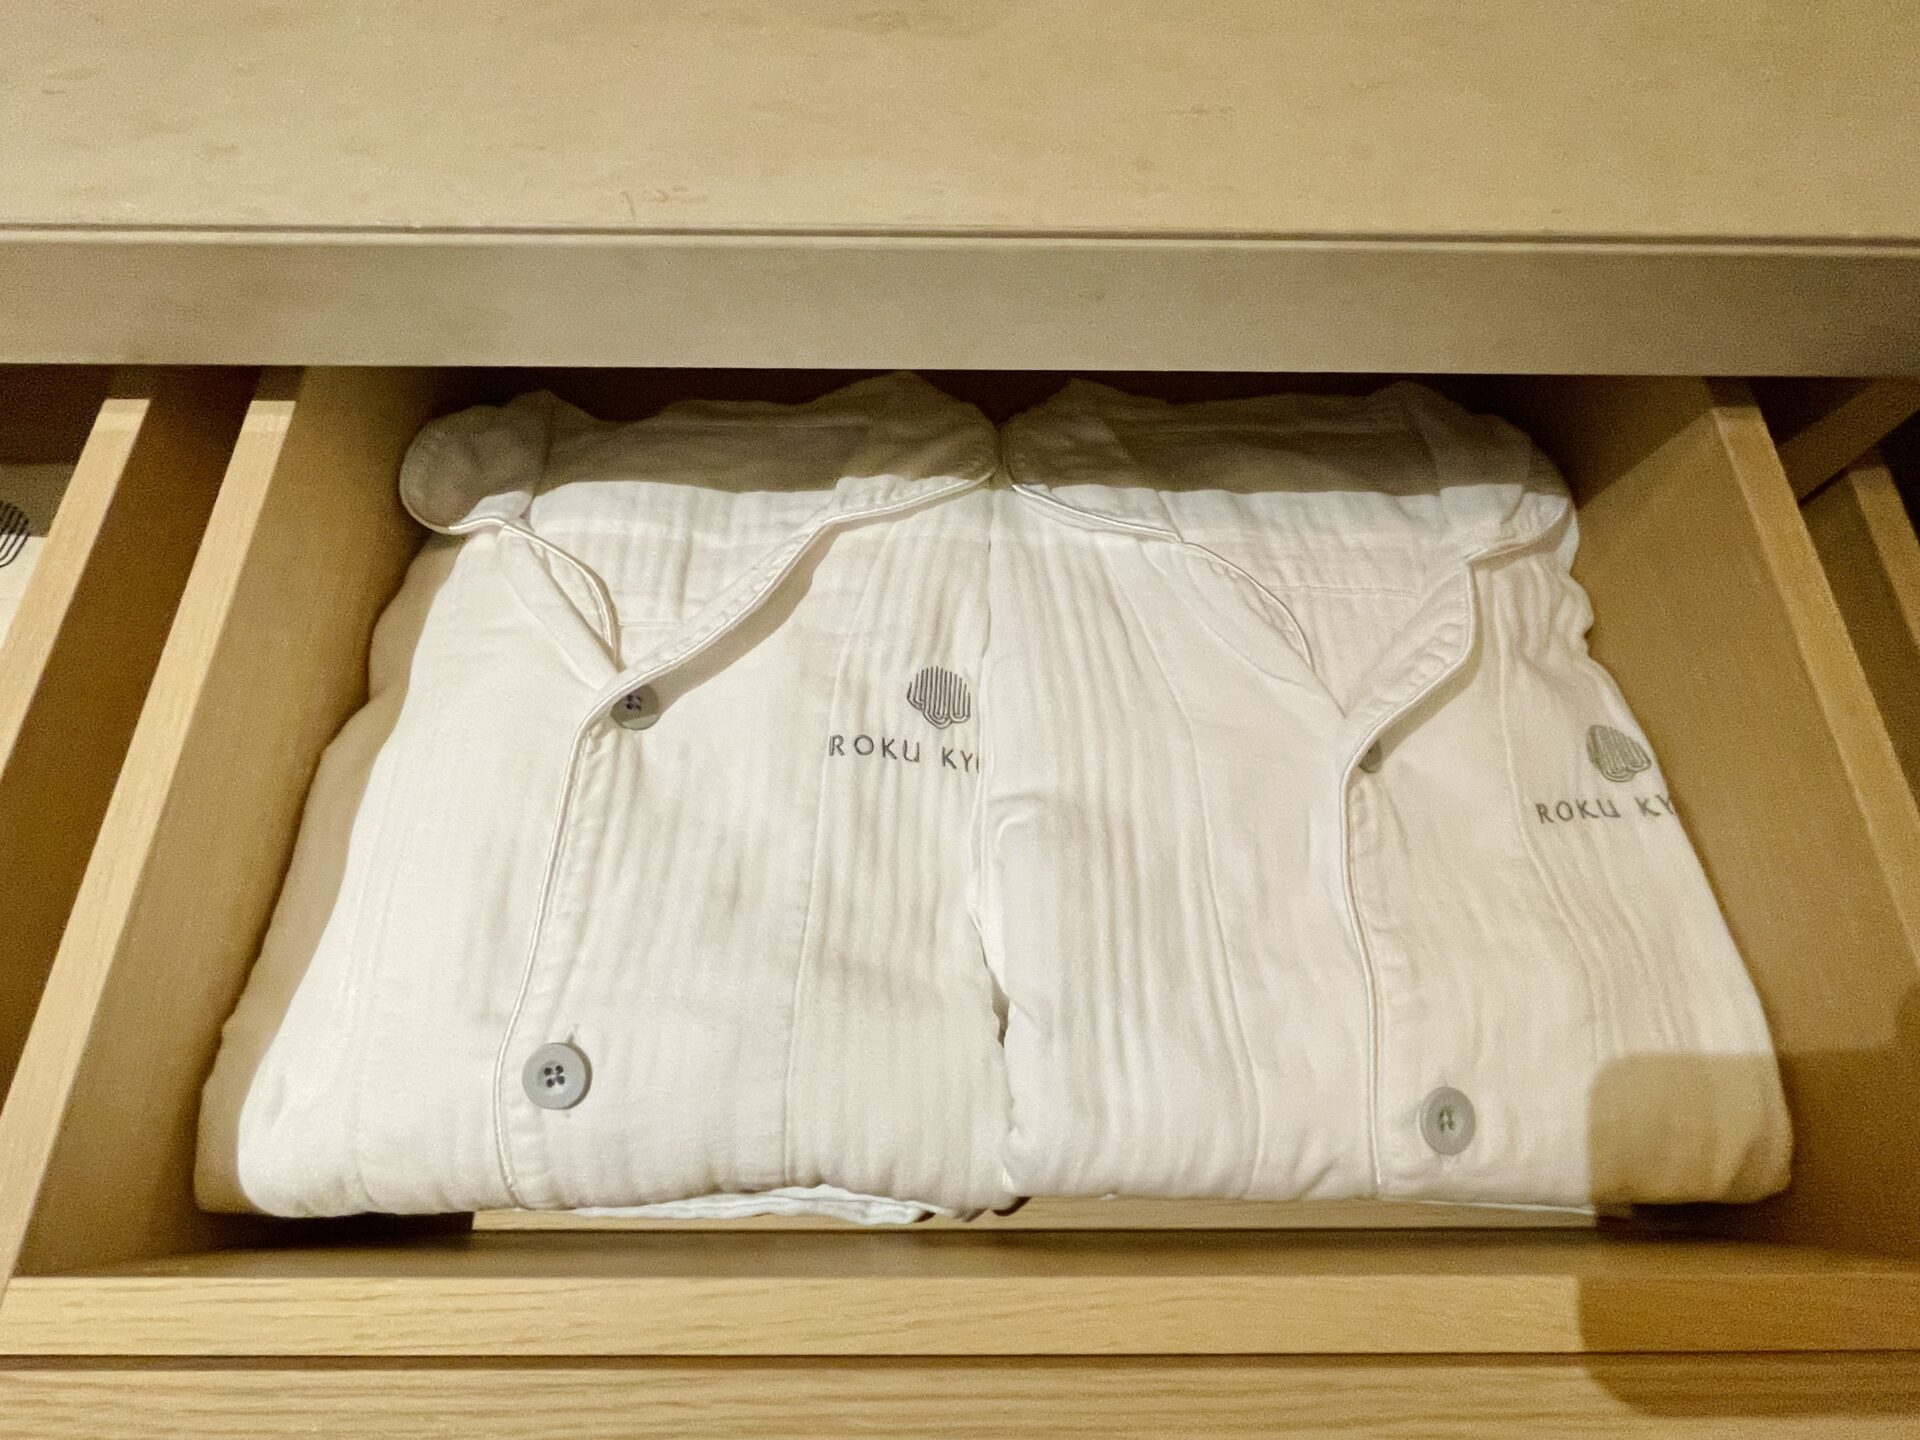 「ロク京都」プレミアデラックス パジャマは上下セパレートタイプ